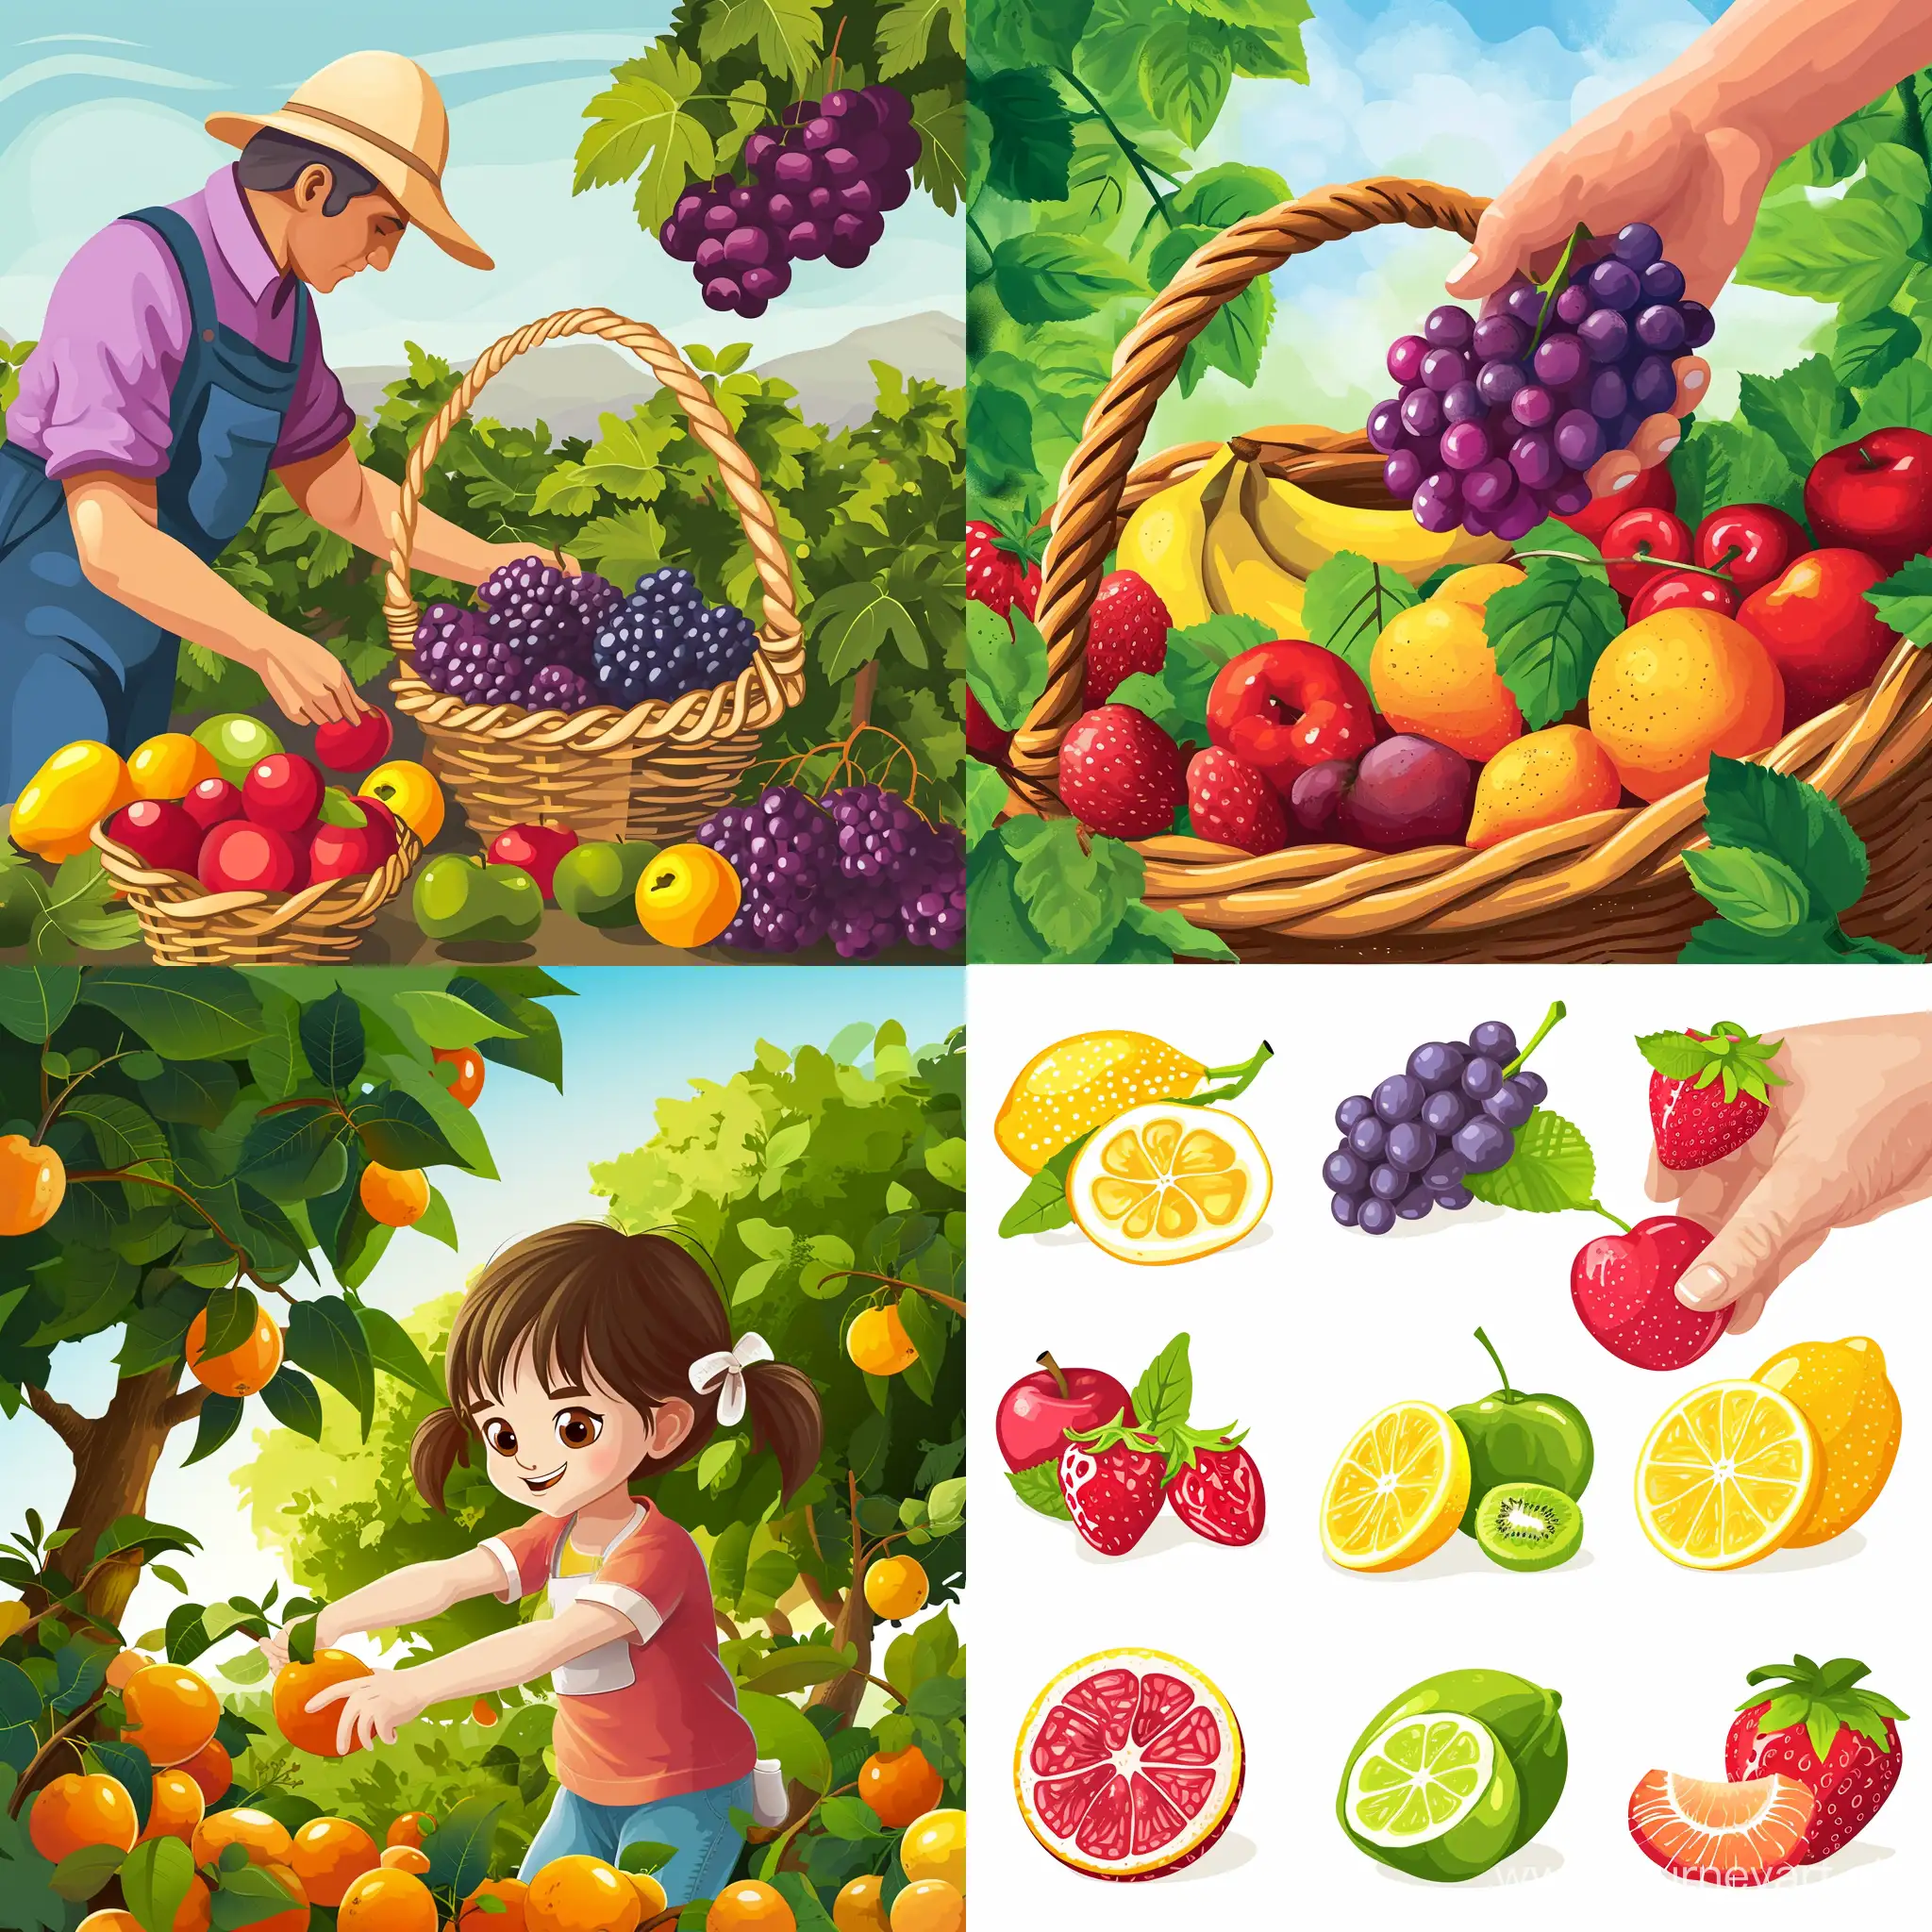 摘水果的动画图片
